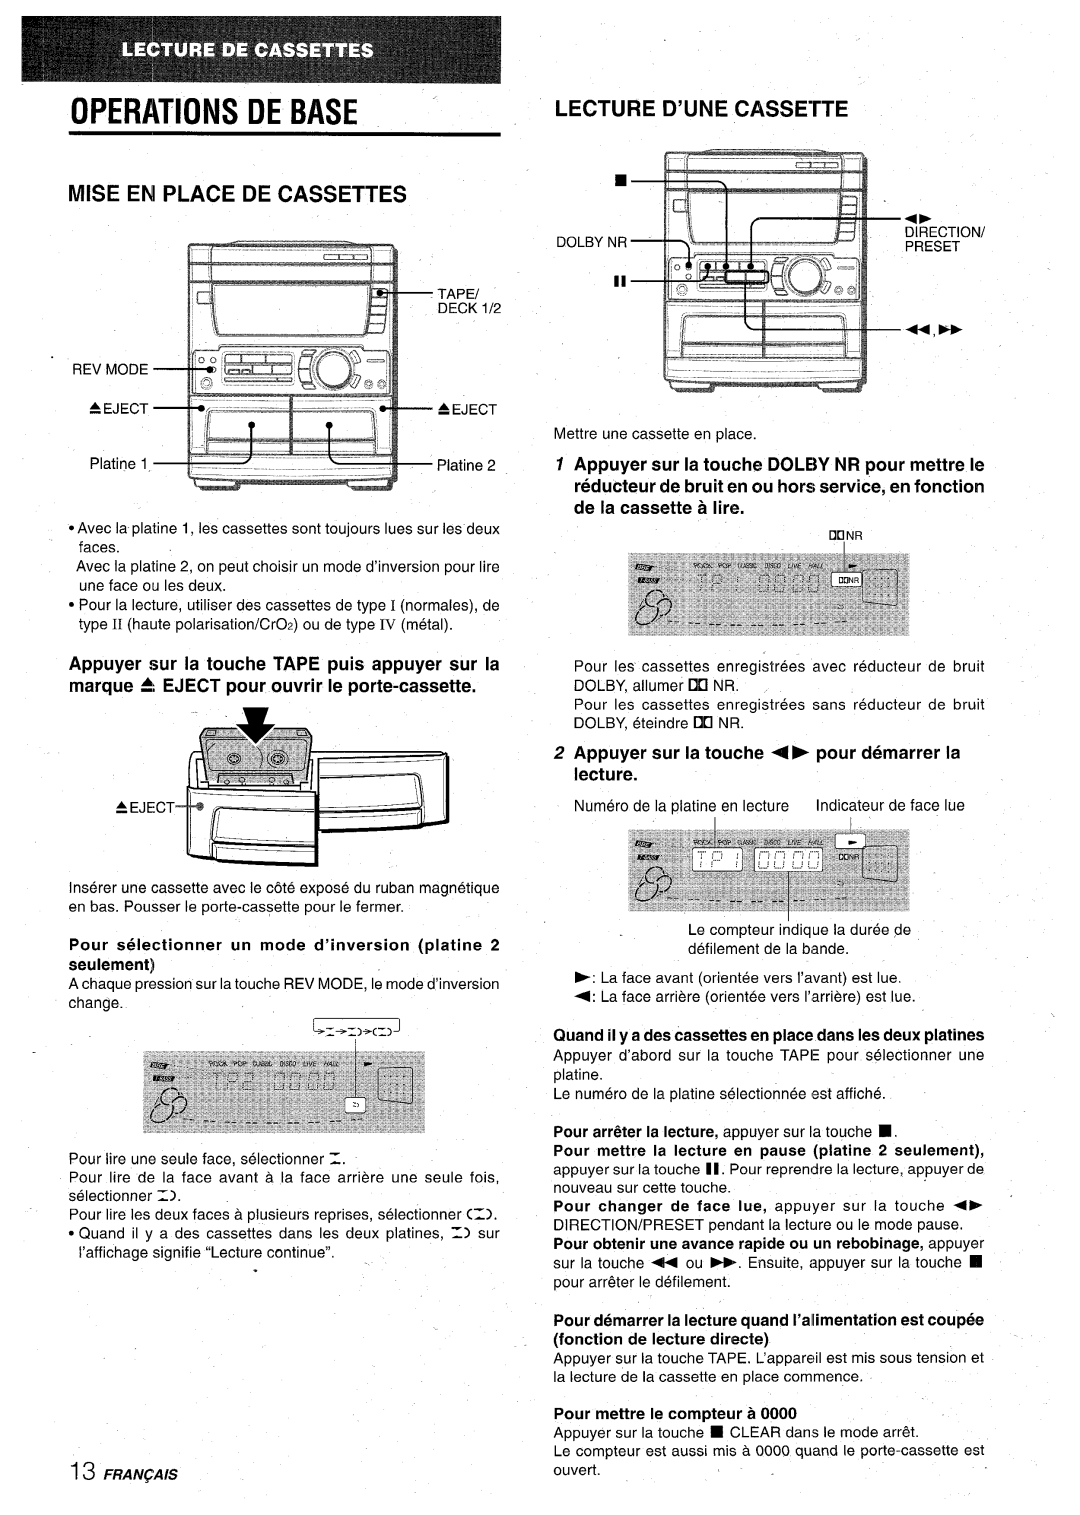 Aiwa CX-NA71 manual Mise En Place De Cassettes, LECTURE D’UNE CASSErTE, Appuyer sur la touche + F pour demarrer la lecture 